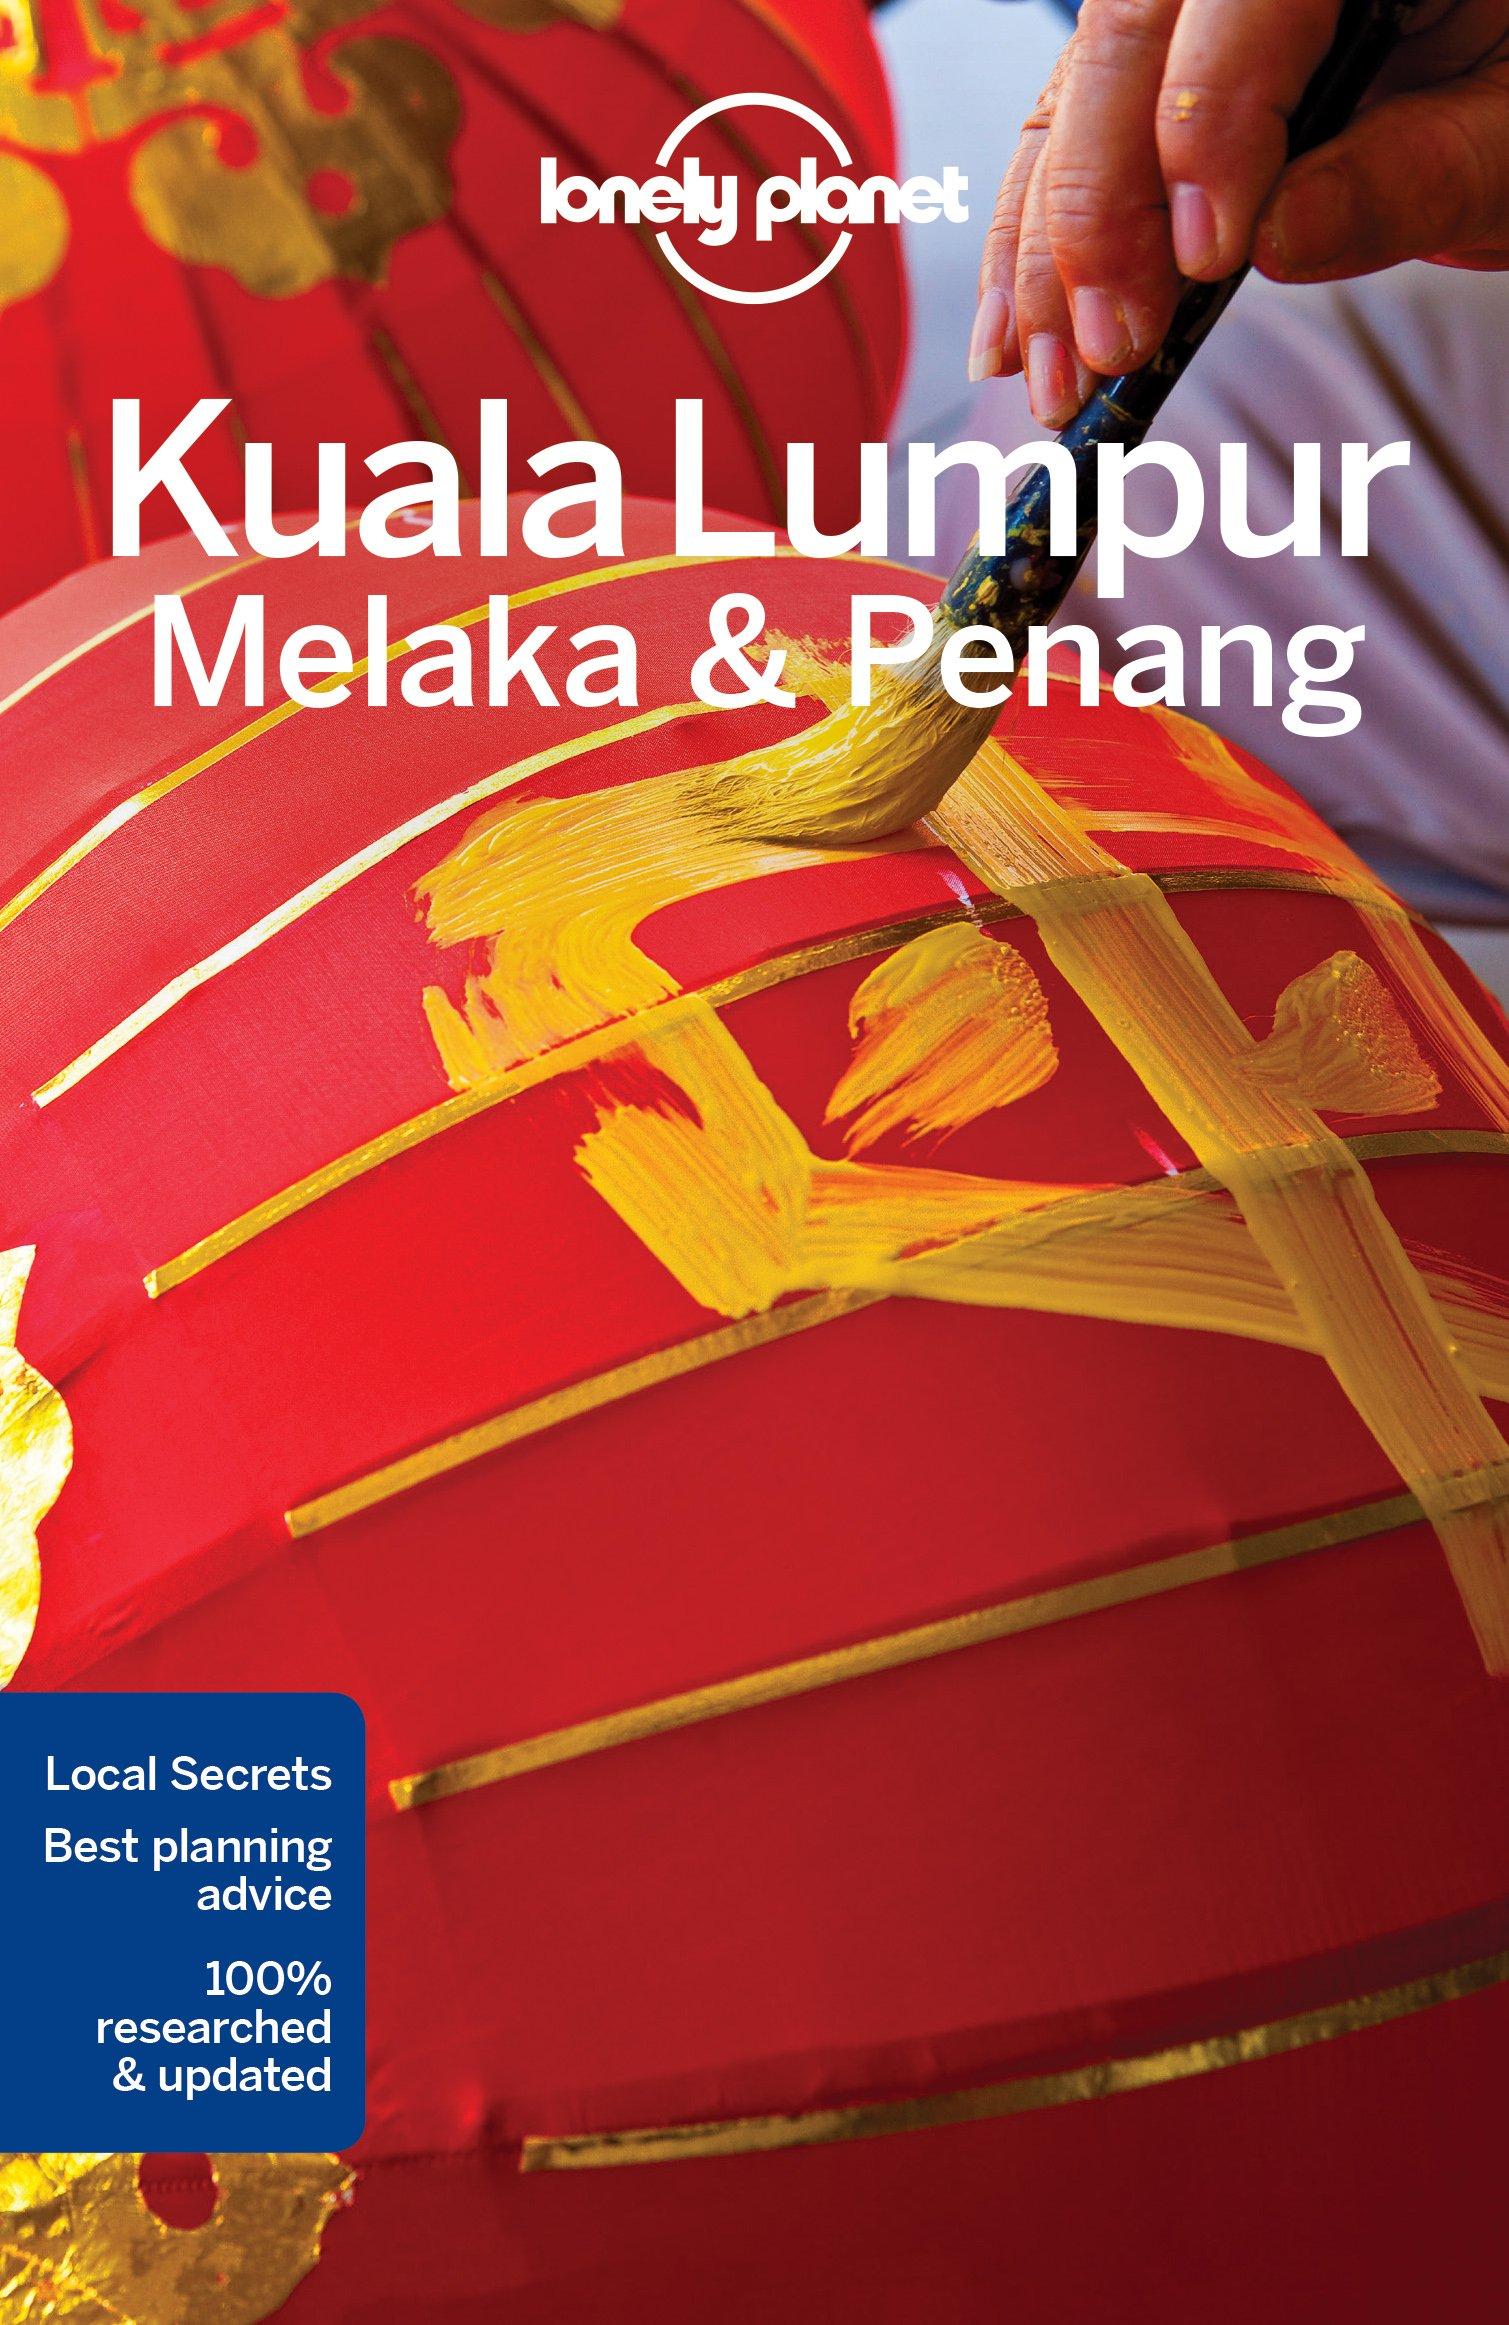 Lonely Planet: Kuala Lumpur, Melaka & Penang